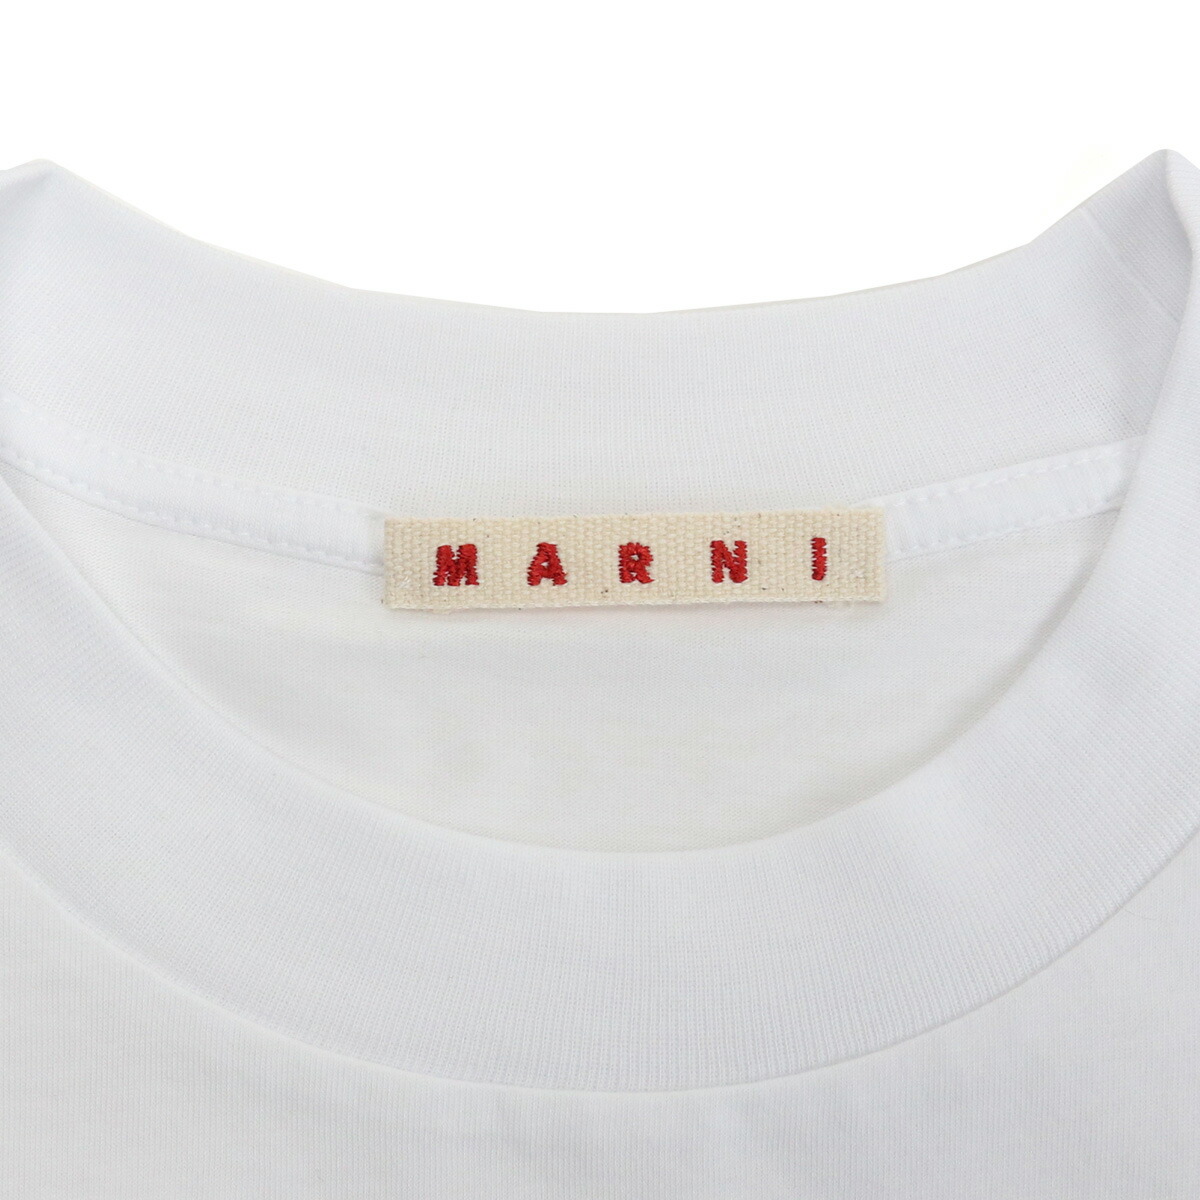 新入荷 MARNI マルニ 半袖 Tシャツ 男女兼用 サイズS ホワイト